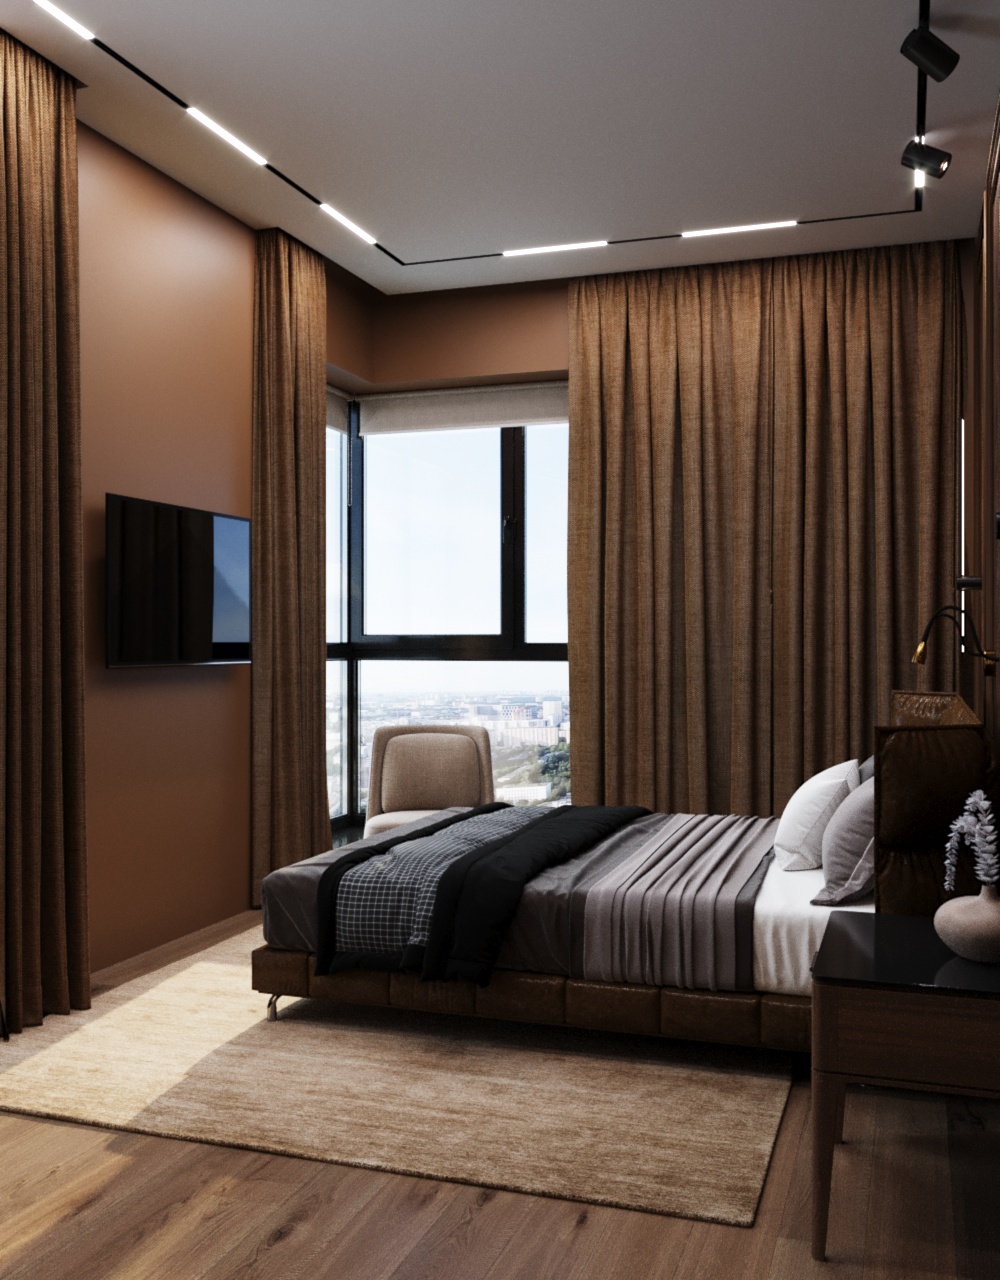 Интерьер спальни cветовыми линиями, угловым окном, рейками с подсветкой и подсветкой светодиодной